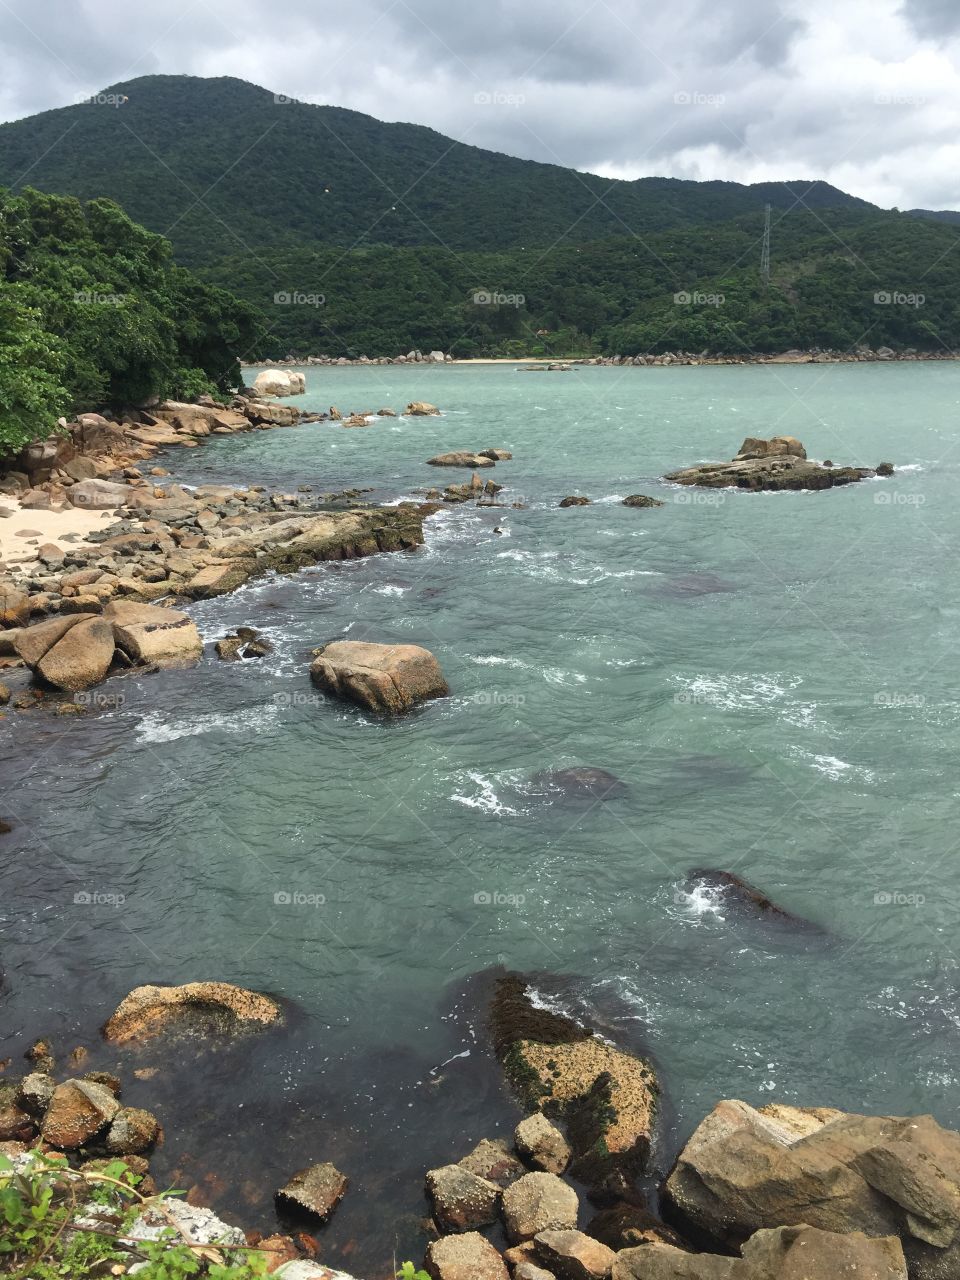 Anhatomirim Island - Florianópolis, Brazil